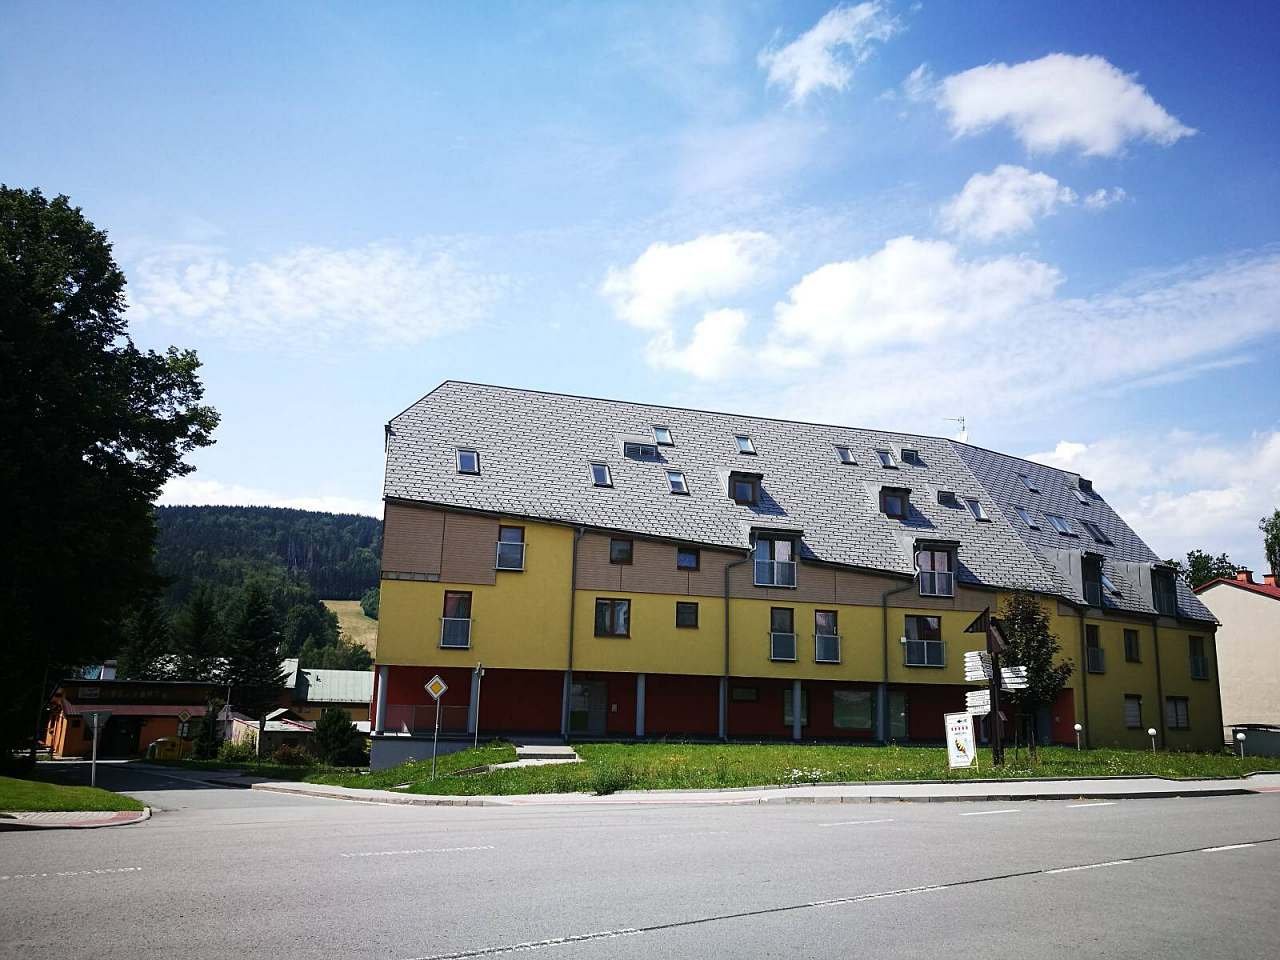 Căn hộ nhà nhỏ Deštné ở Orlické hory